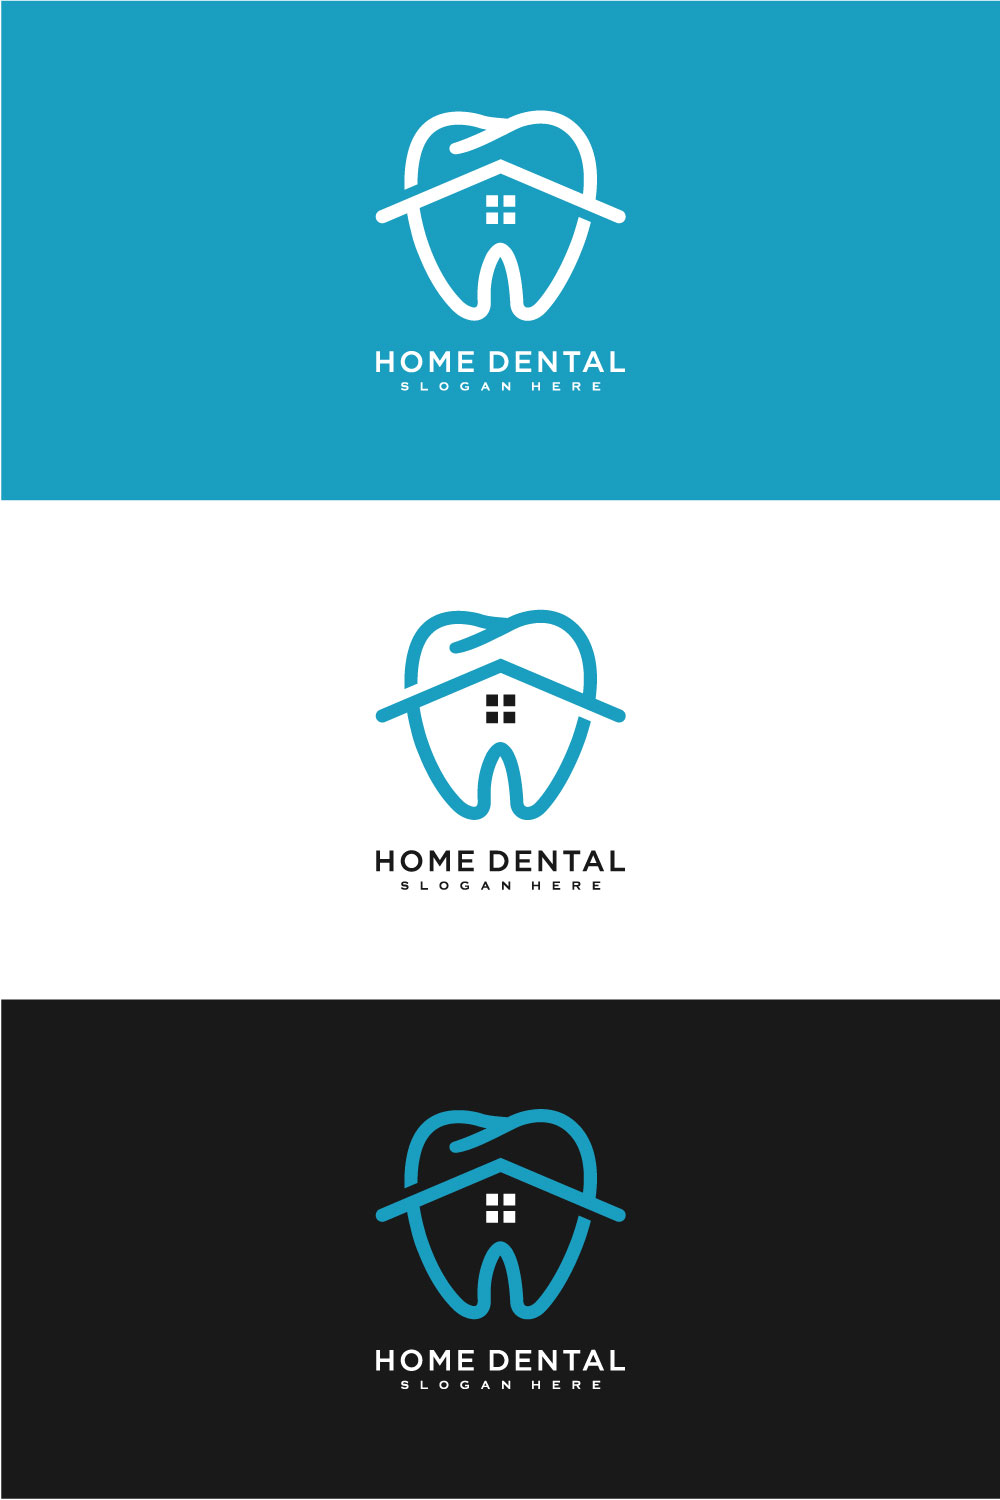 Home Dental Logo Vector Design pinterest.